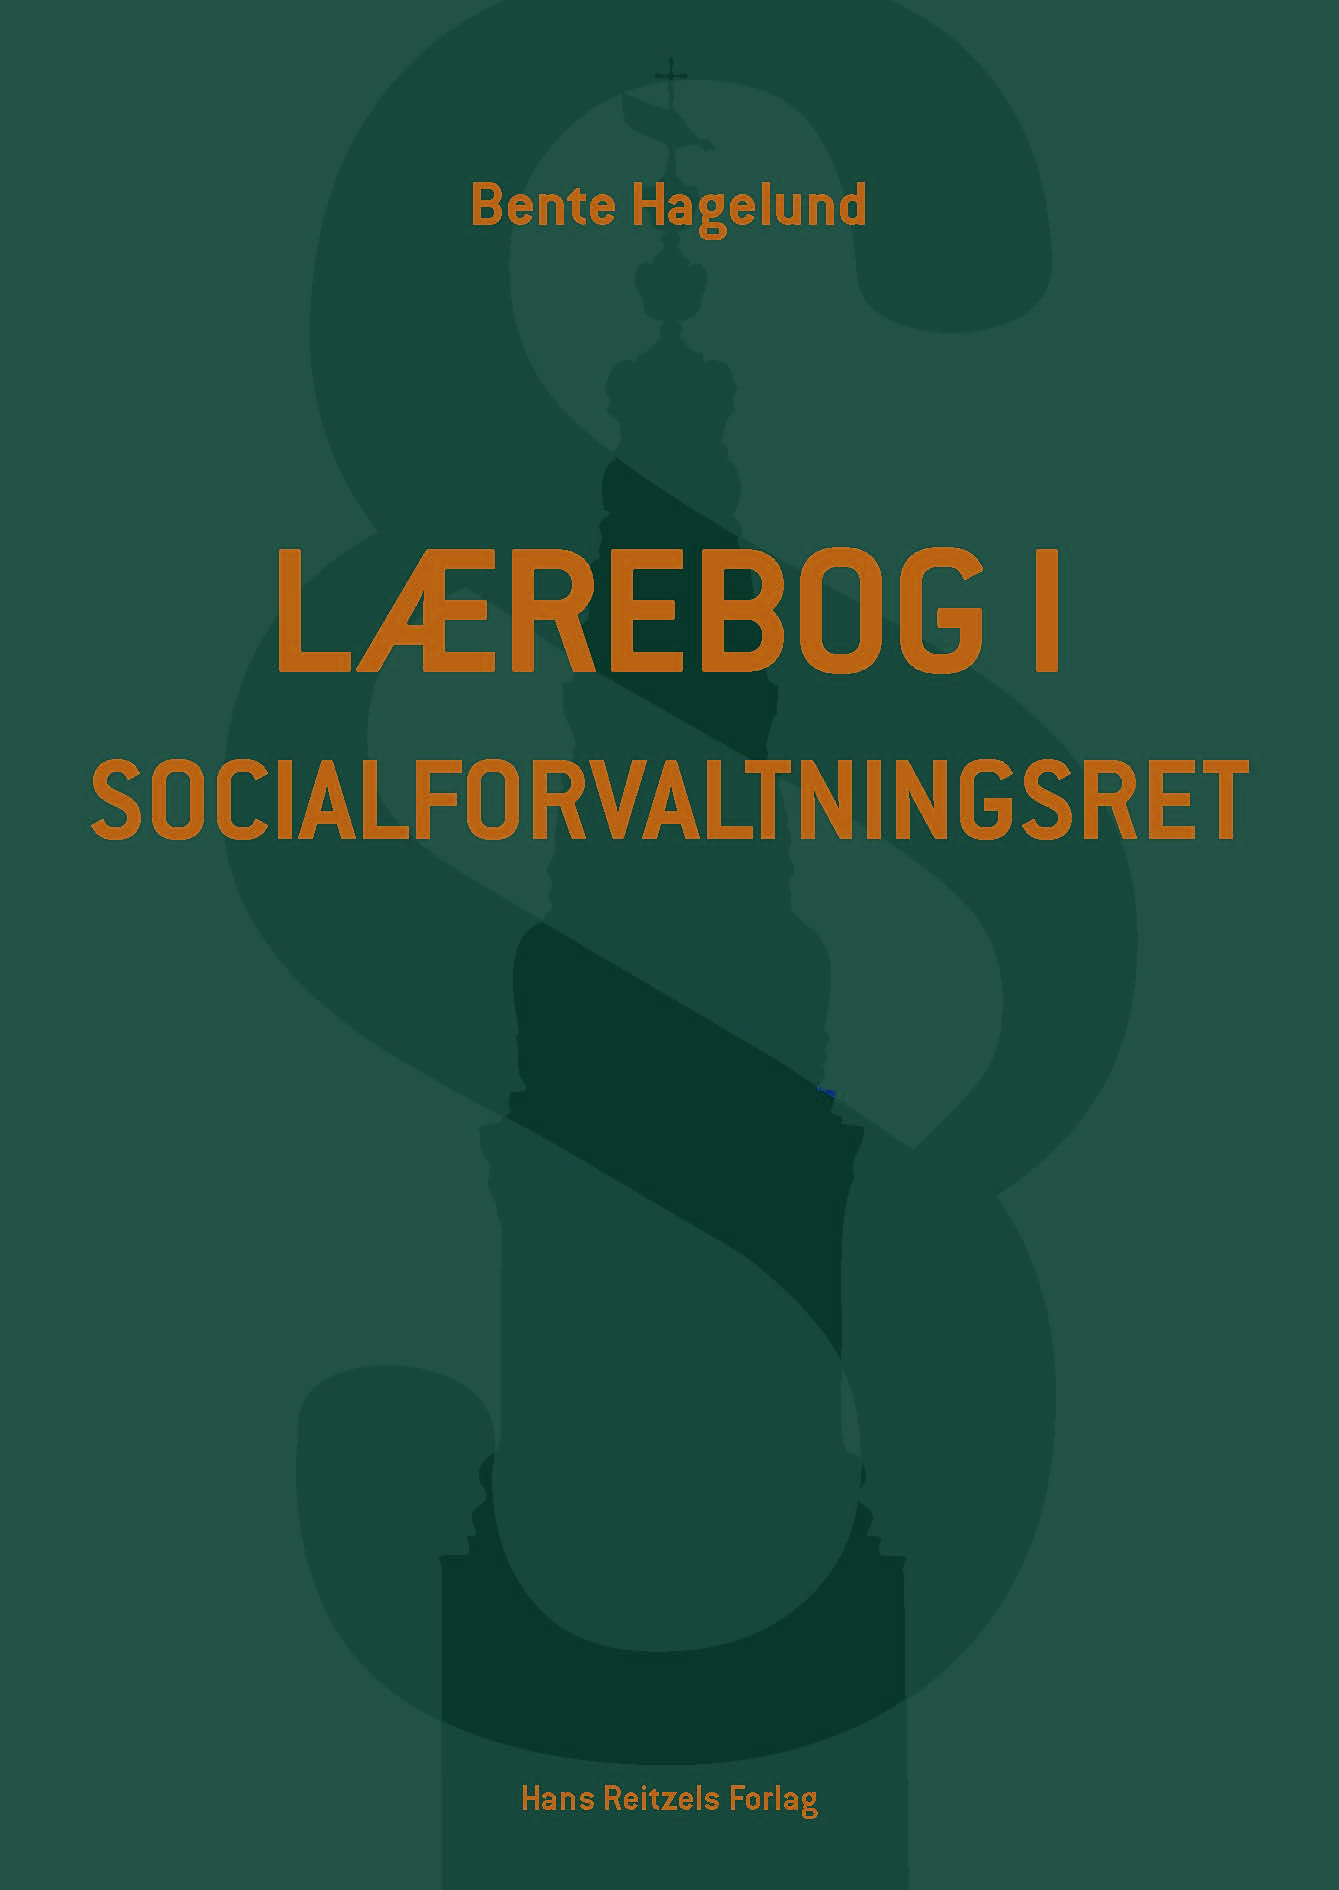 Bente Hagelund: Lærebog i socialforvaltningsret, Hans Reitzels Forlag.